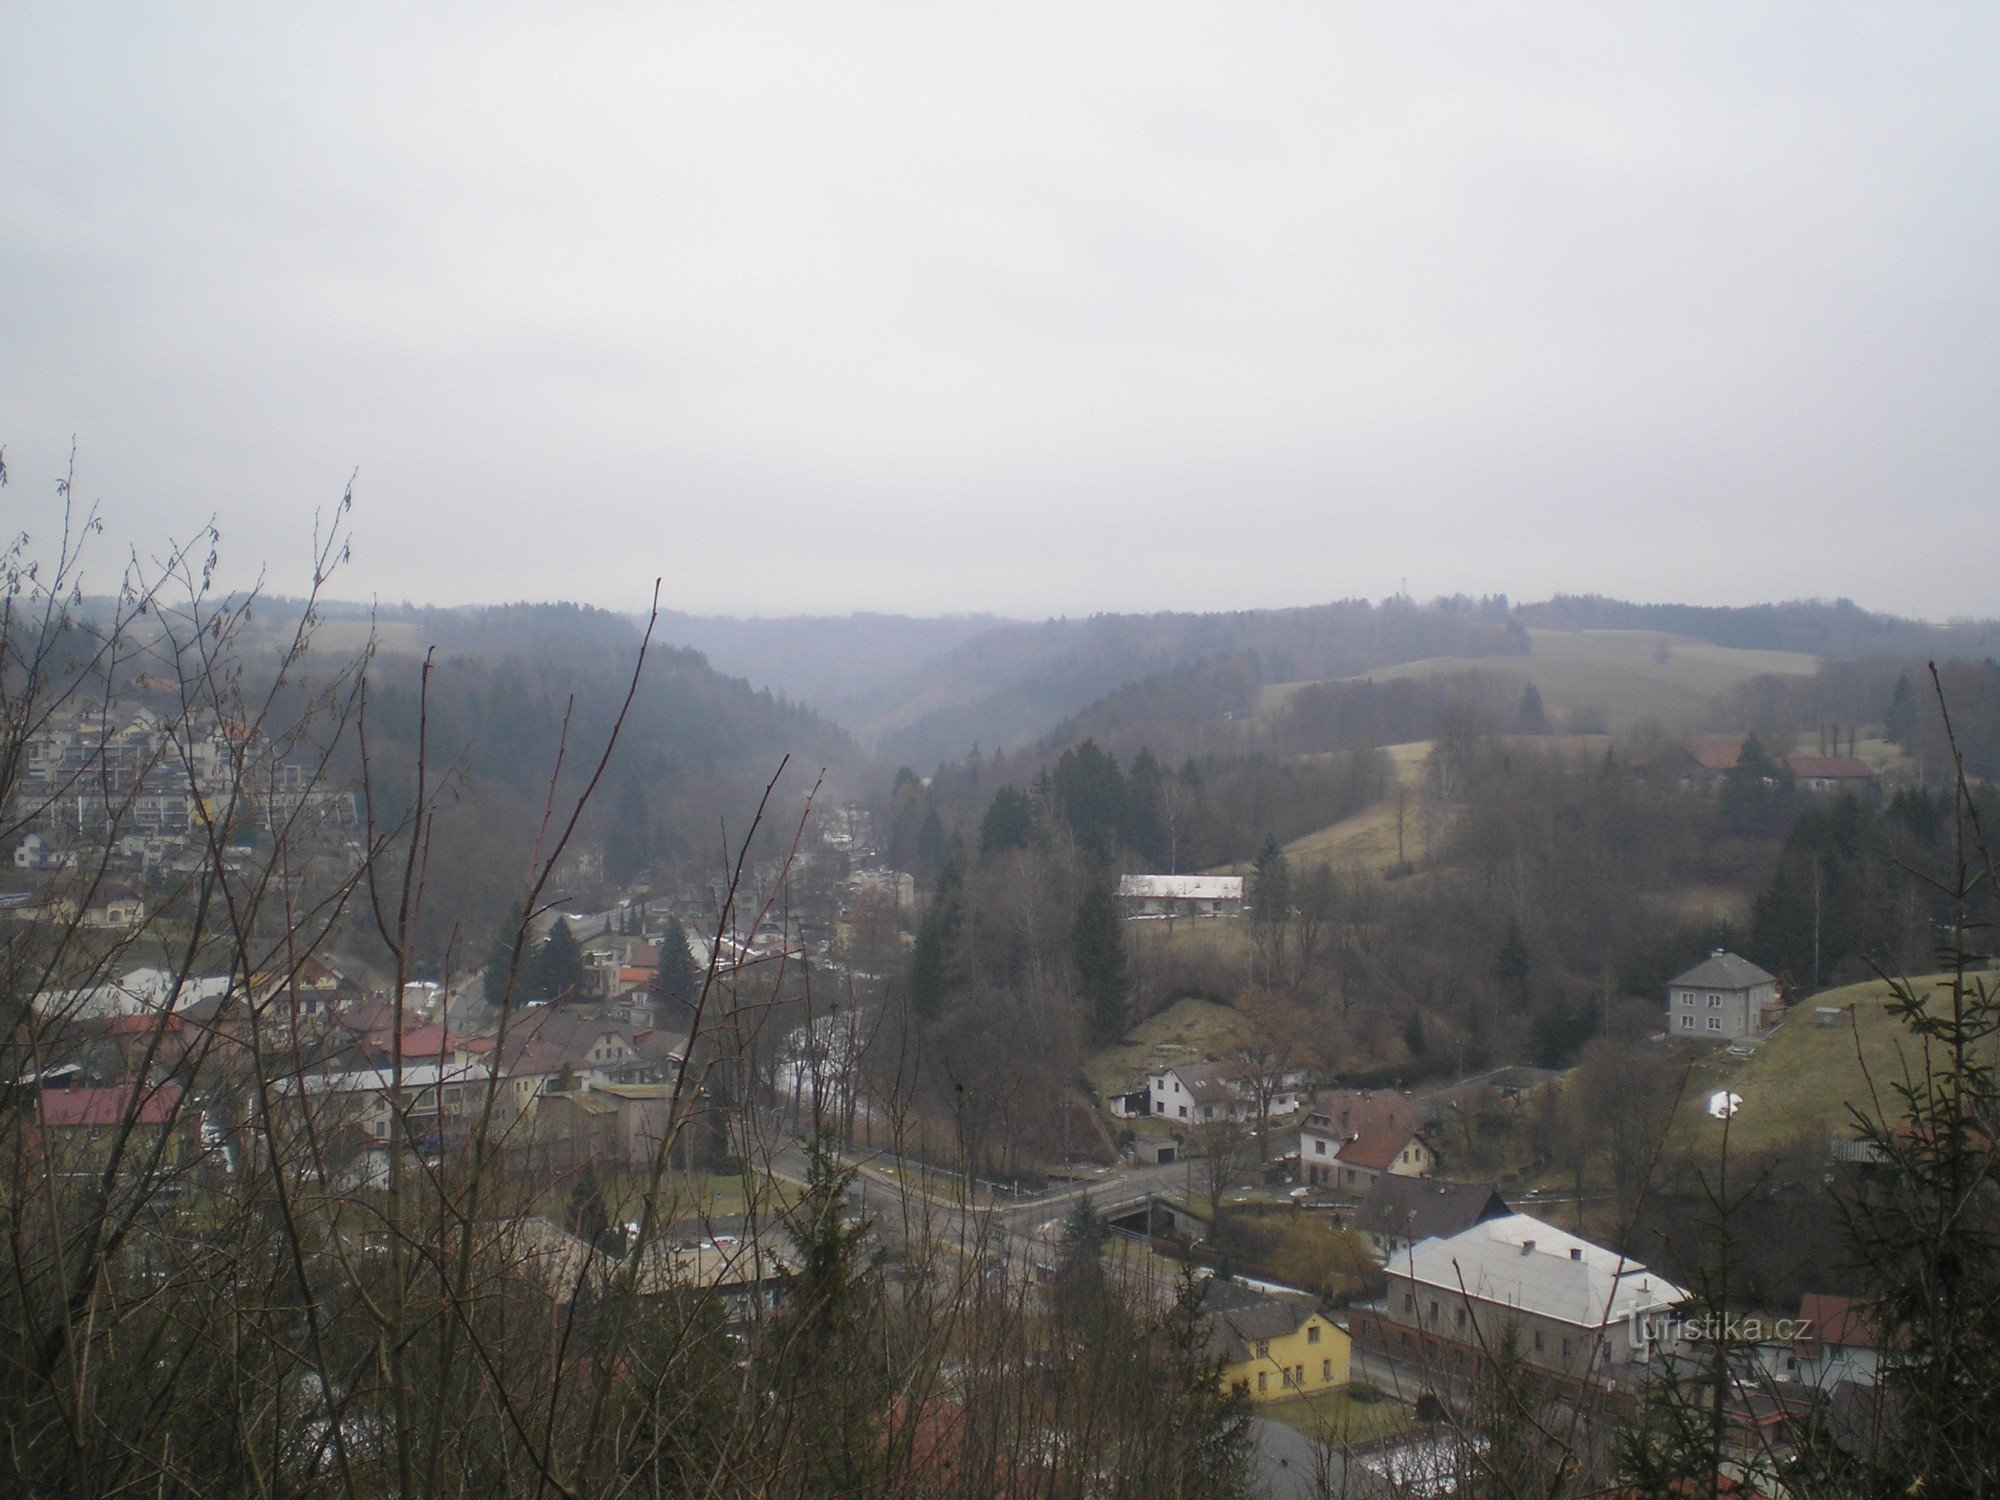 Vista desde la torre de vigilancia (lamentablemente no se ven las montañas de Orlické)